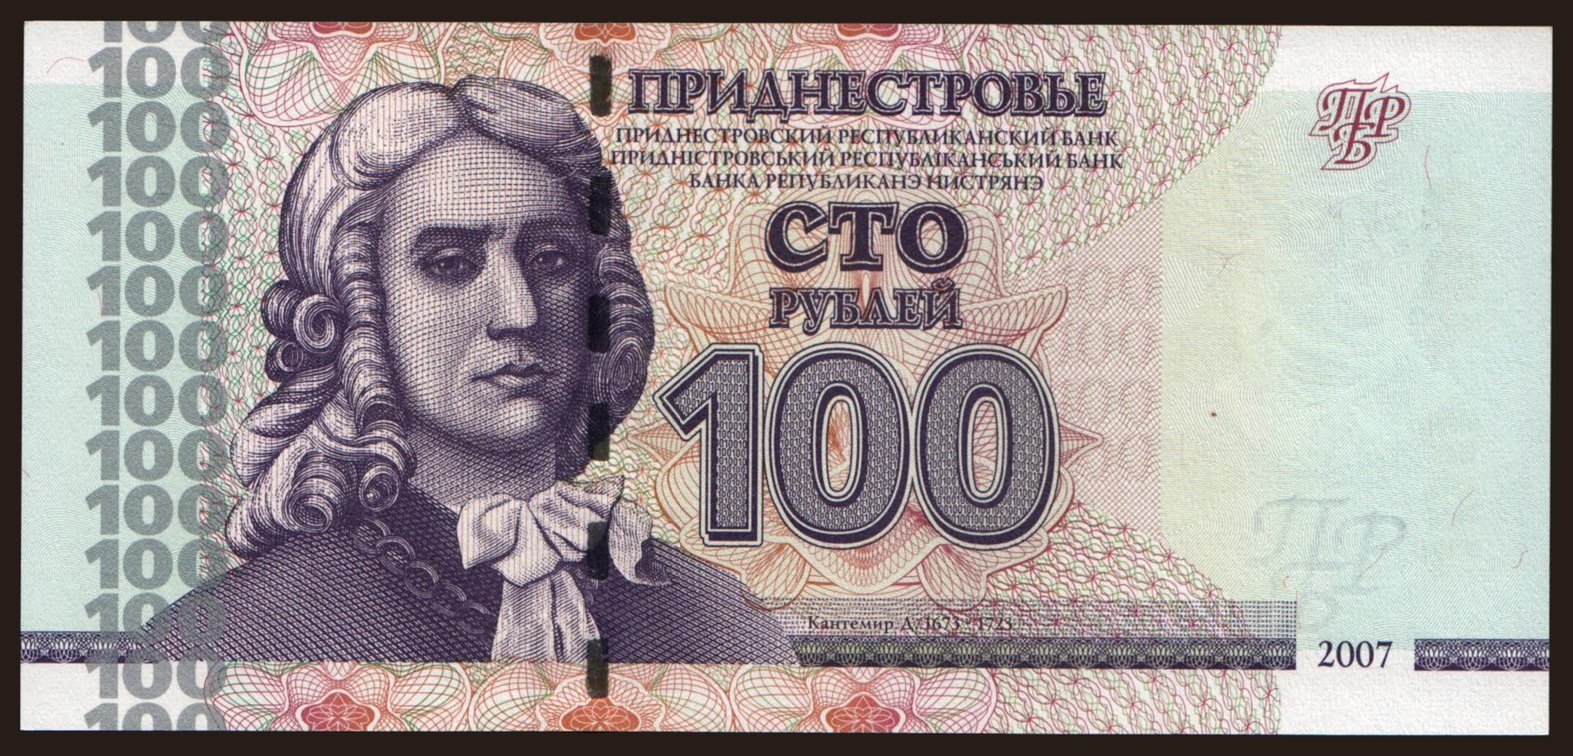 100 rublei, 2007